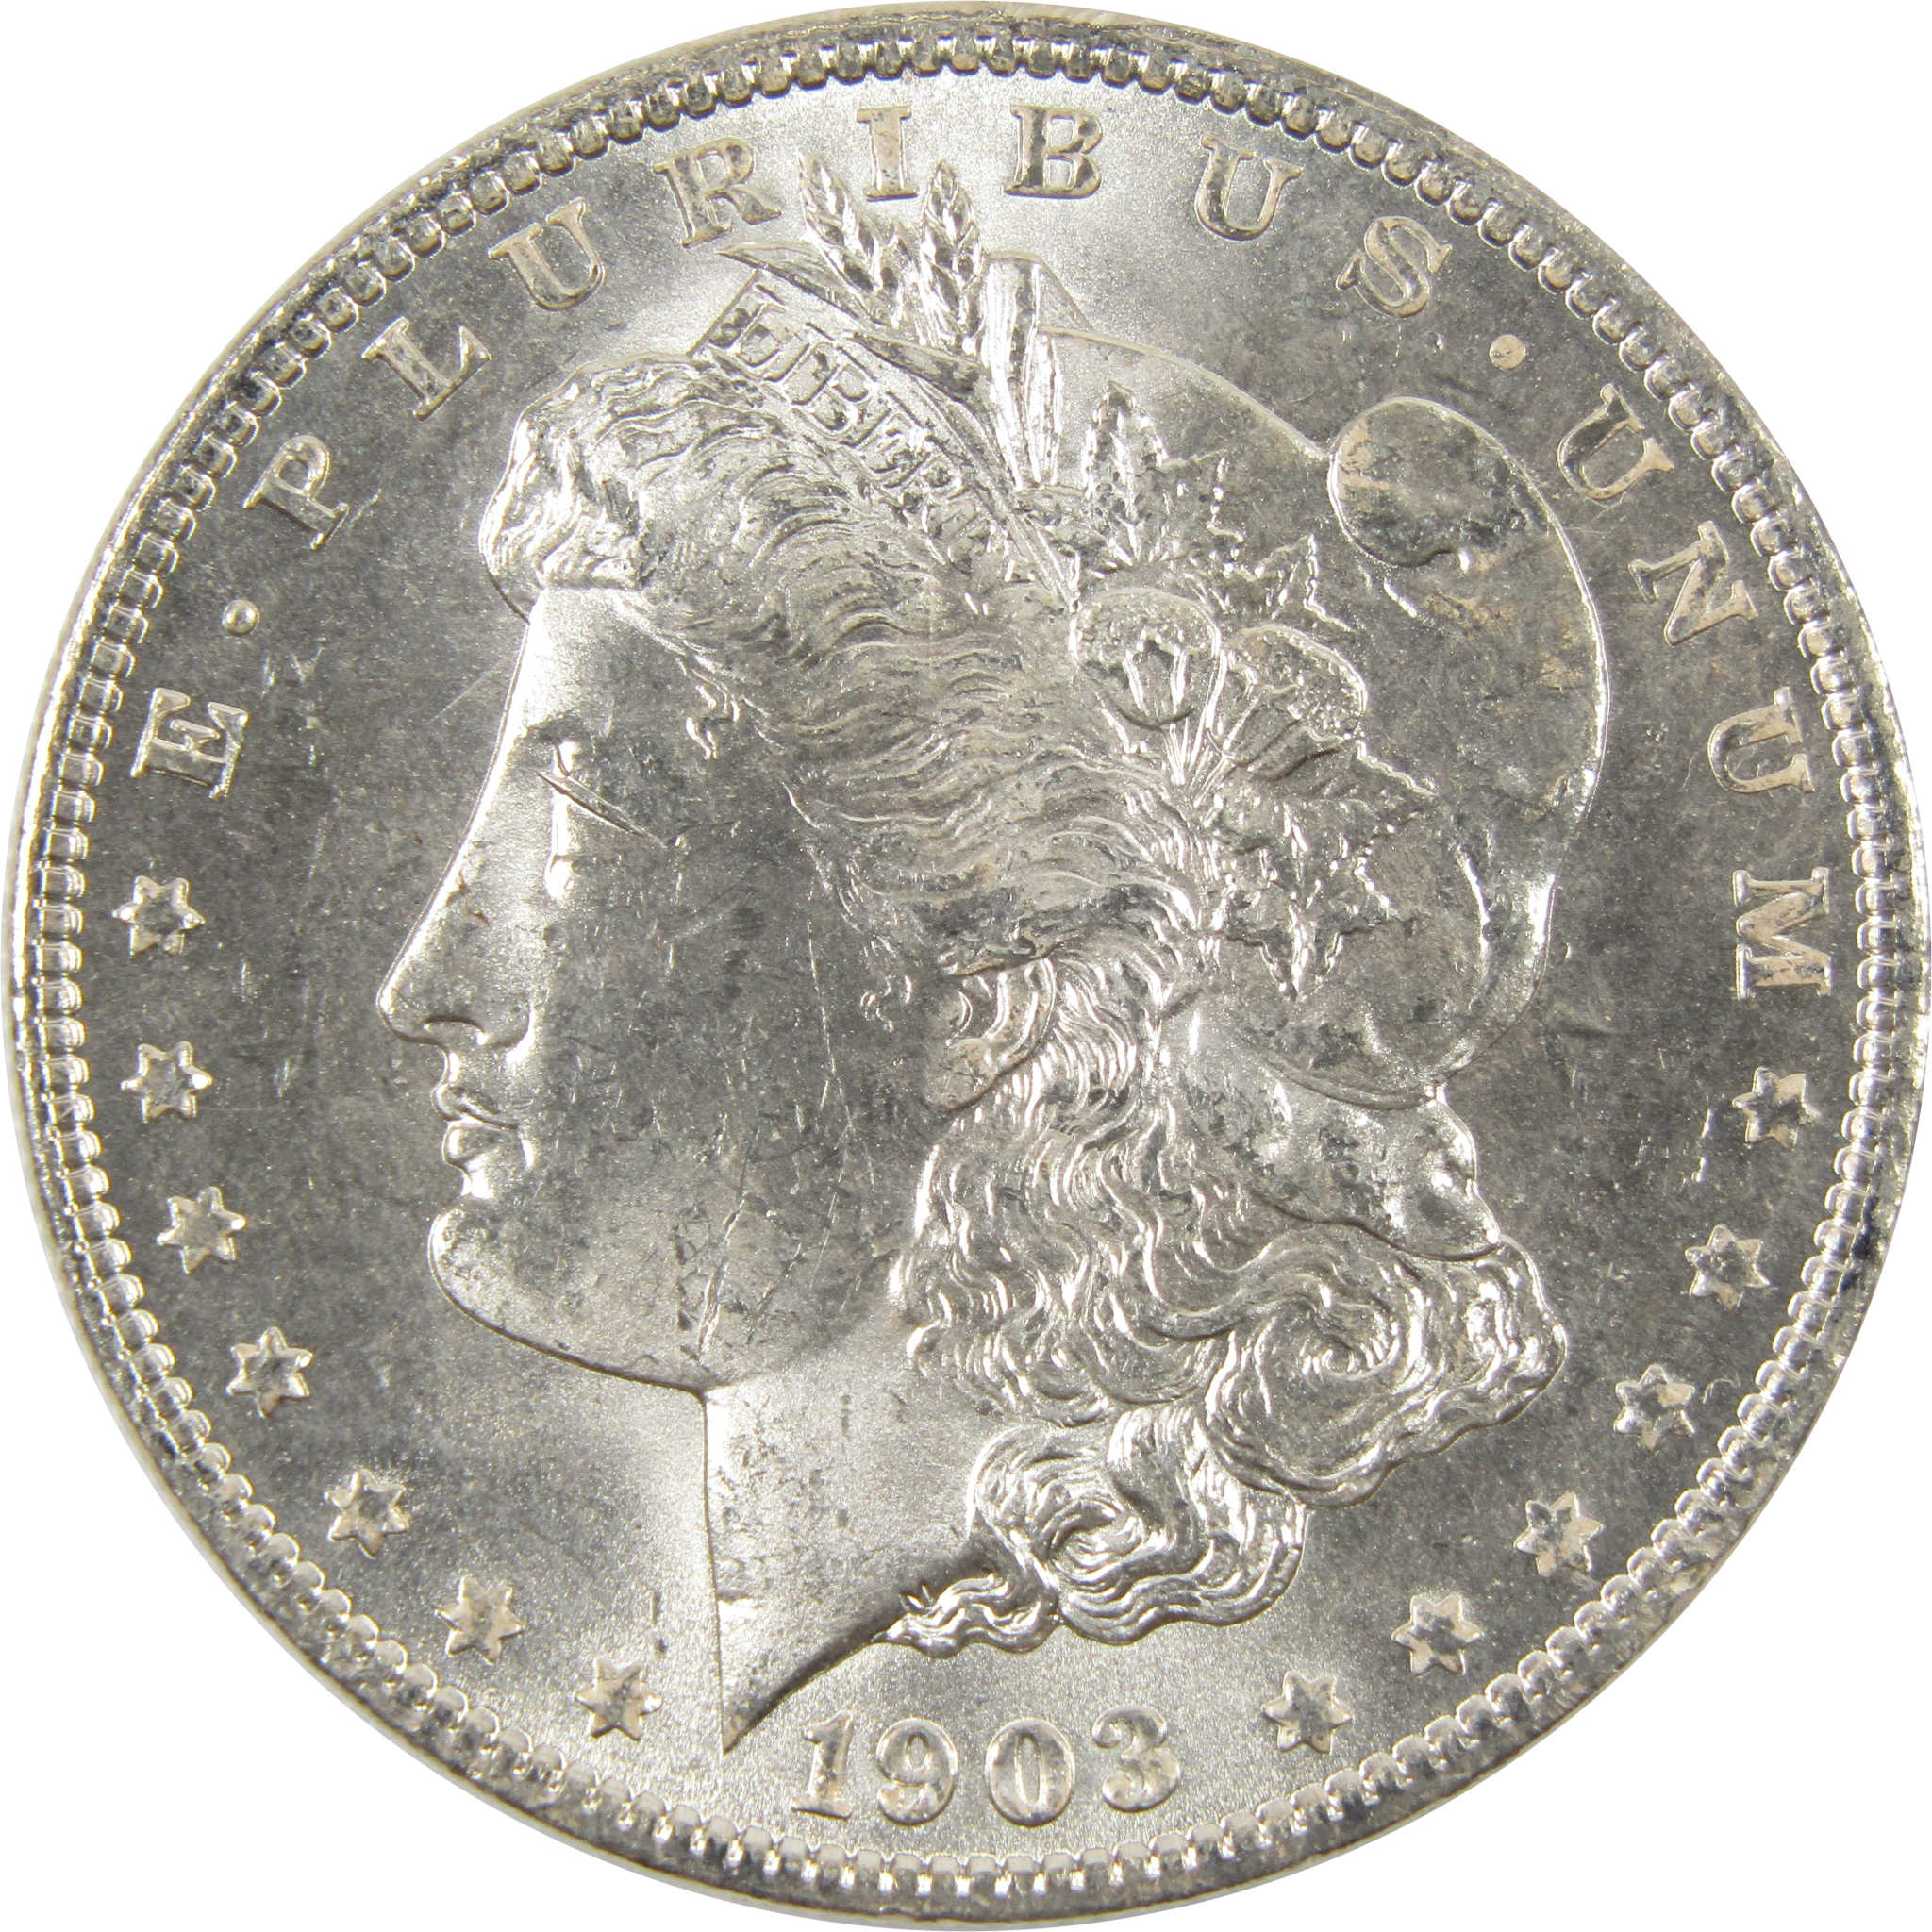 1903 O Morgan Dollar BU Choice Uncirculated 90% Silver $1 SKU:I7519 - Morgan coin - Morgan silver dollar - Morgan silver dollar for sale - Profile Coins &amp; Collectibles